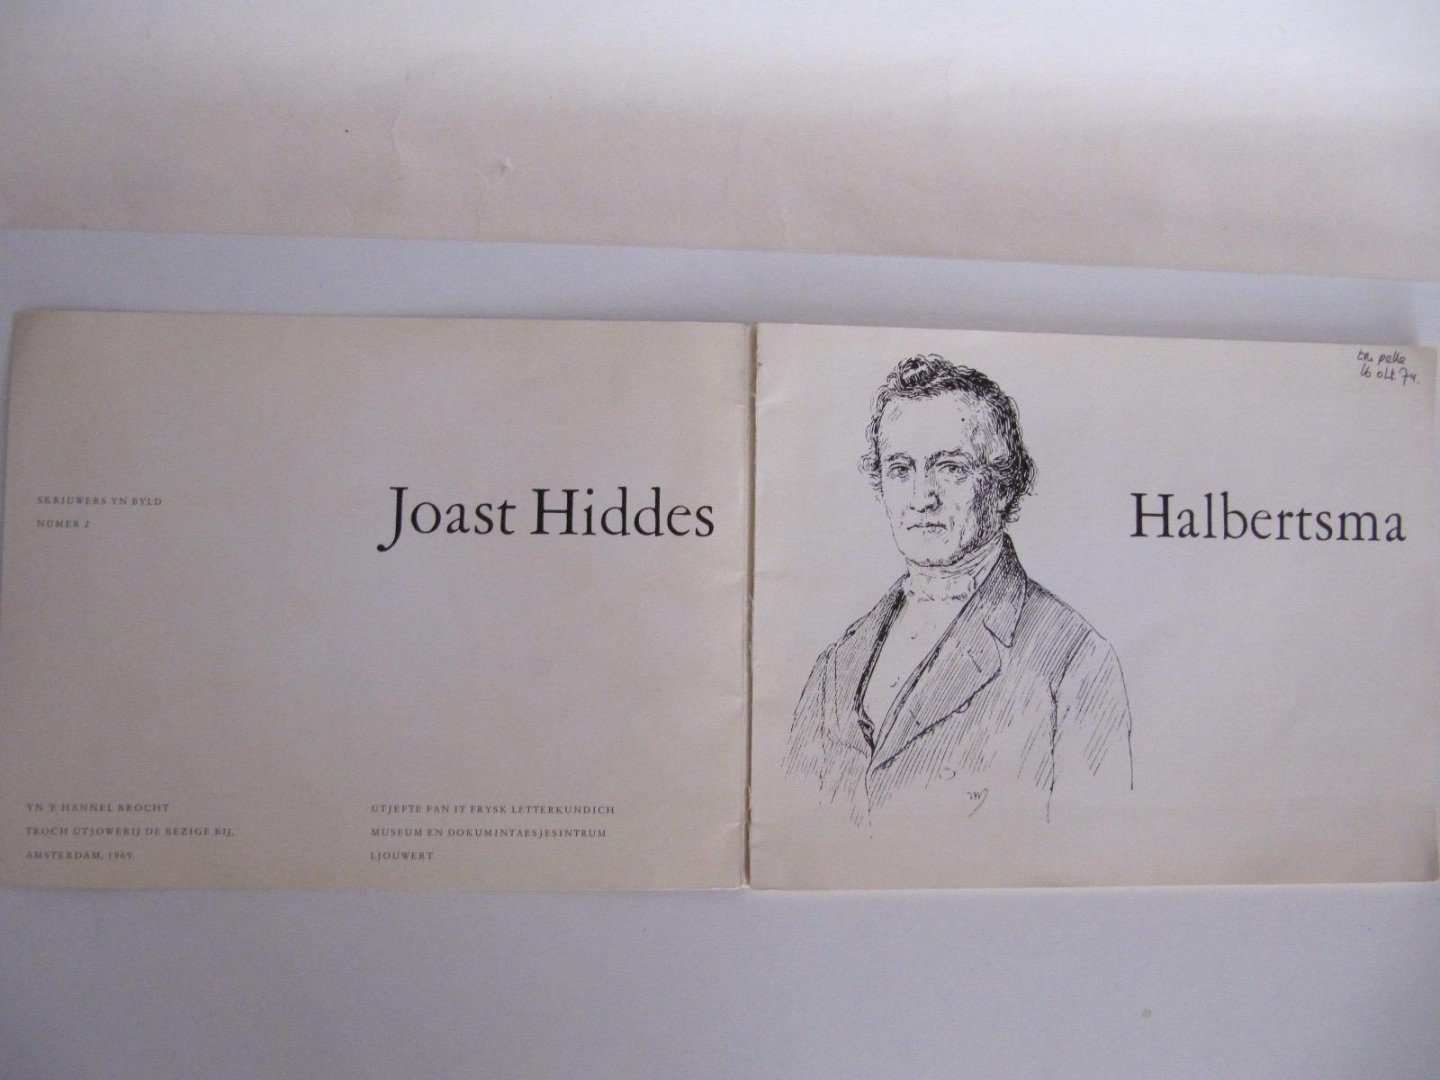  - Skriuwers Yn Byld 2- Joast Hiddes Halbertsma 1789-1869